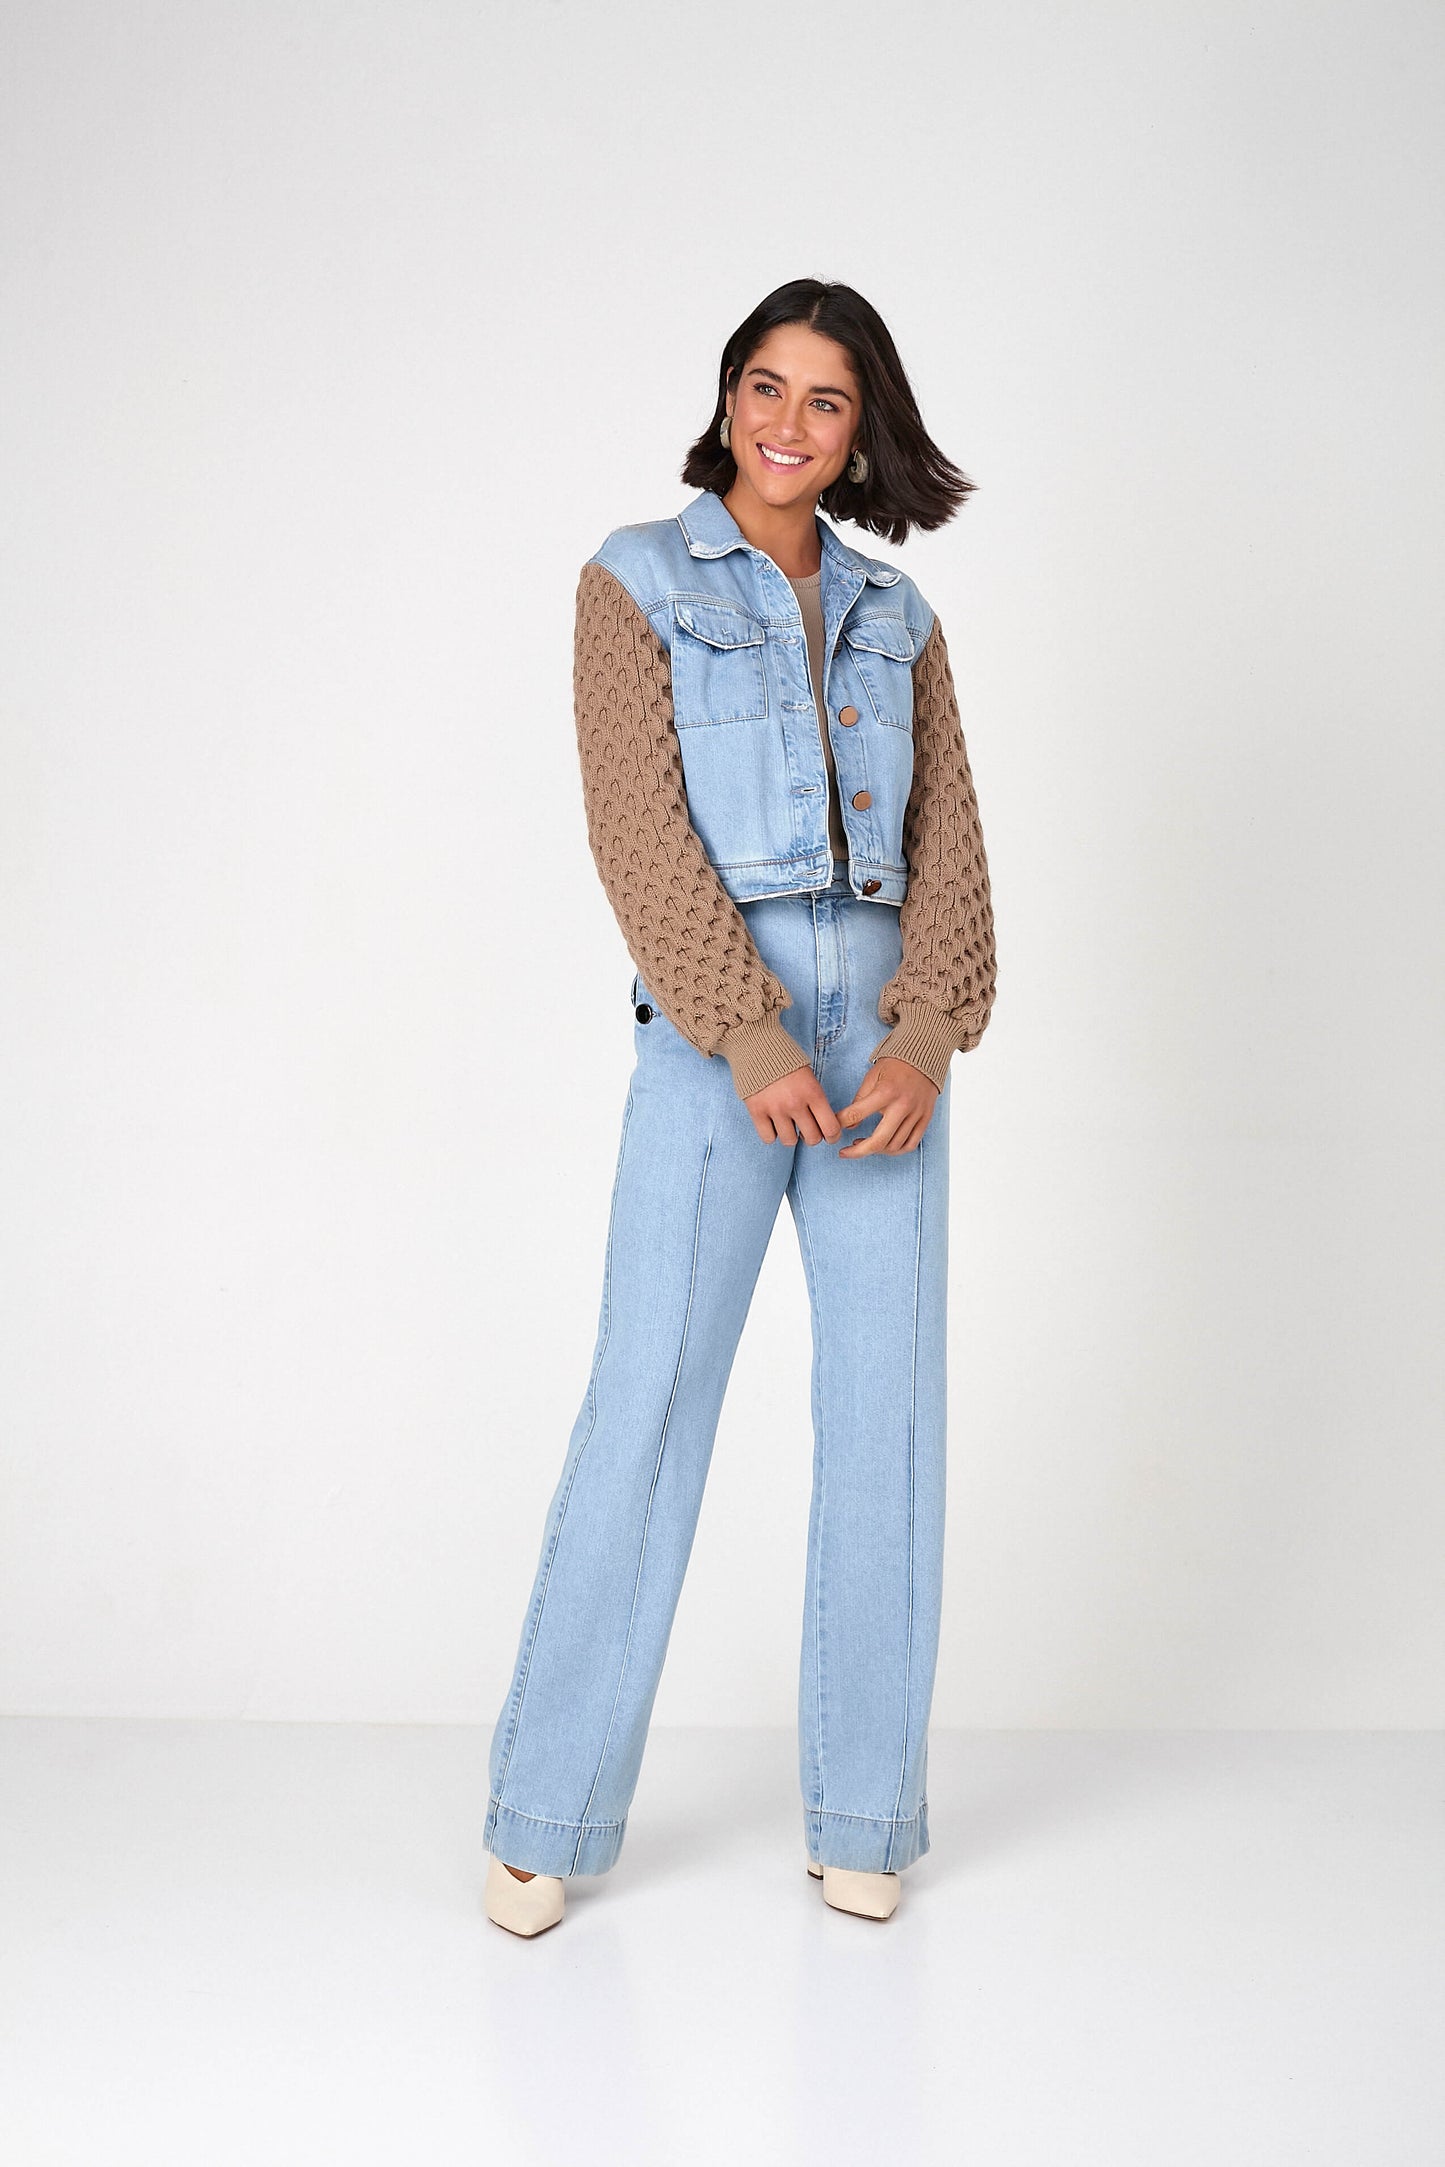 jaqueta jeans cropped com manga de tricot